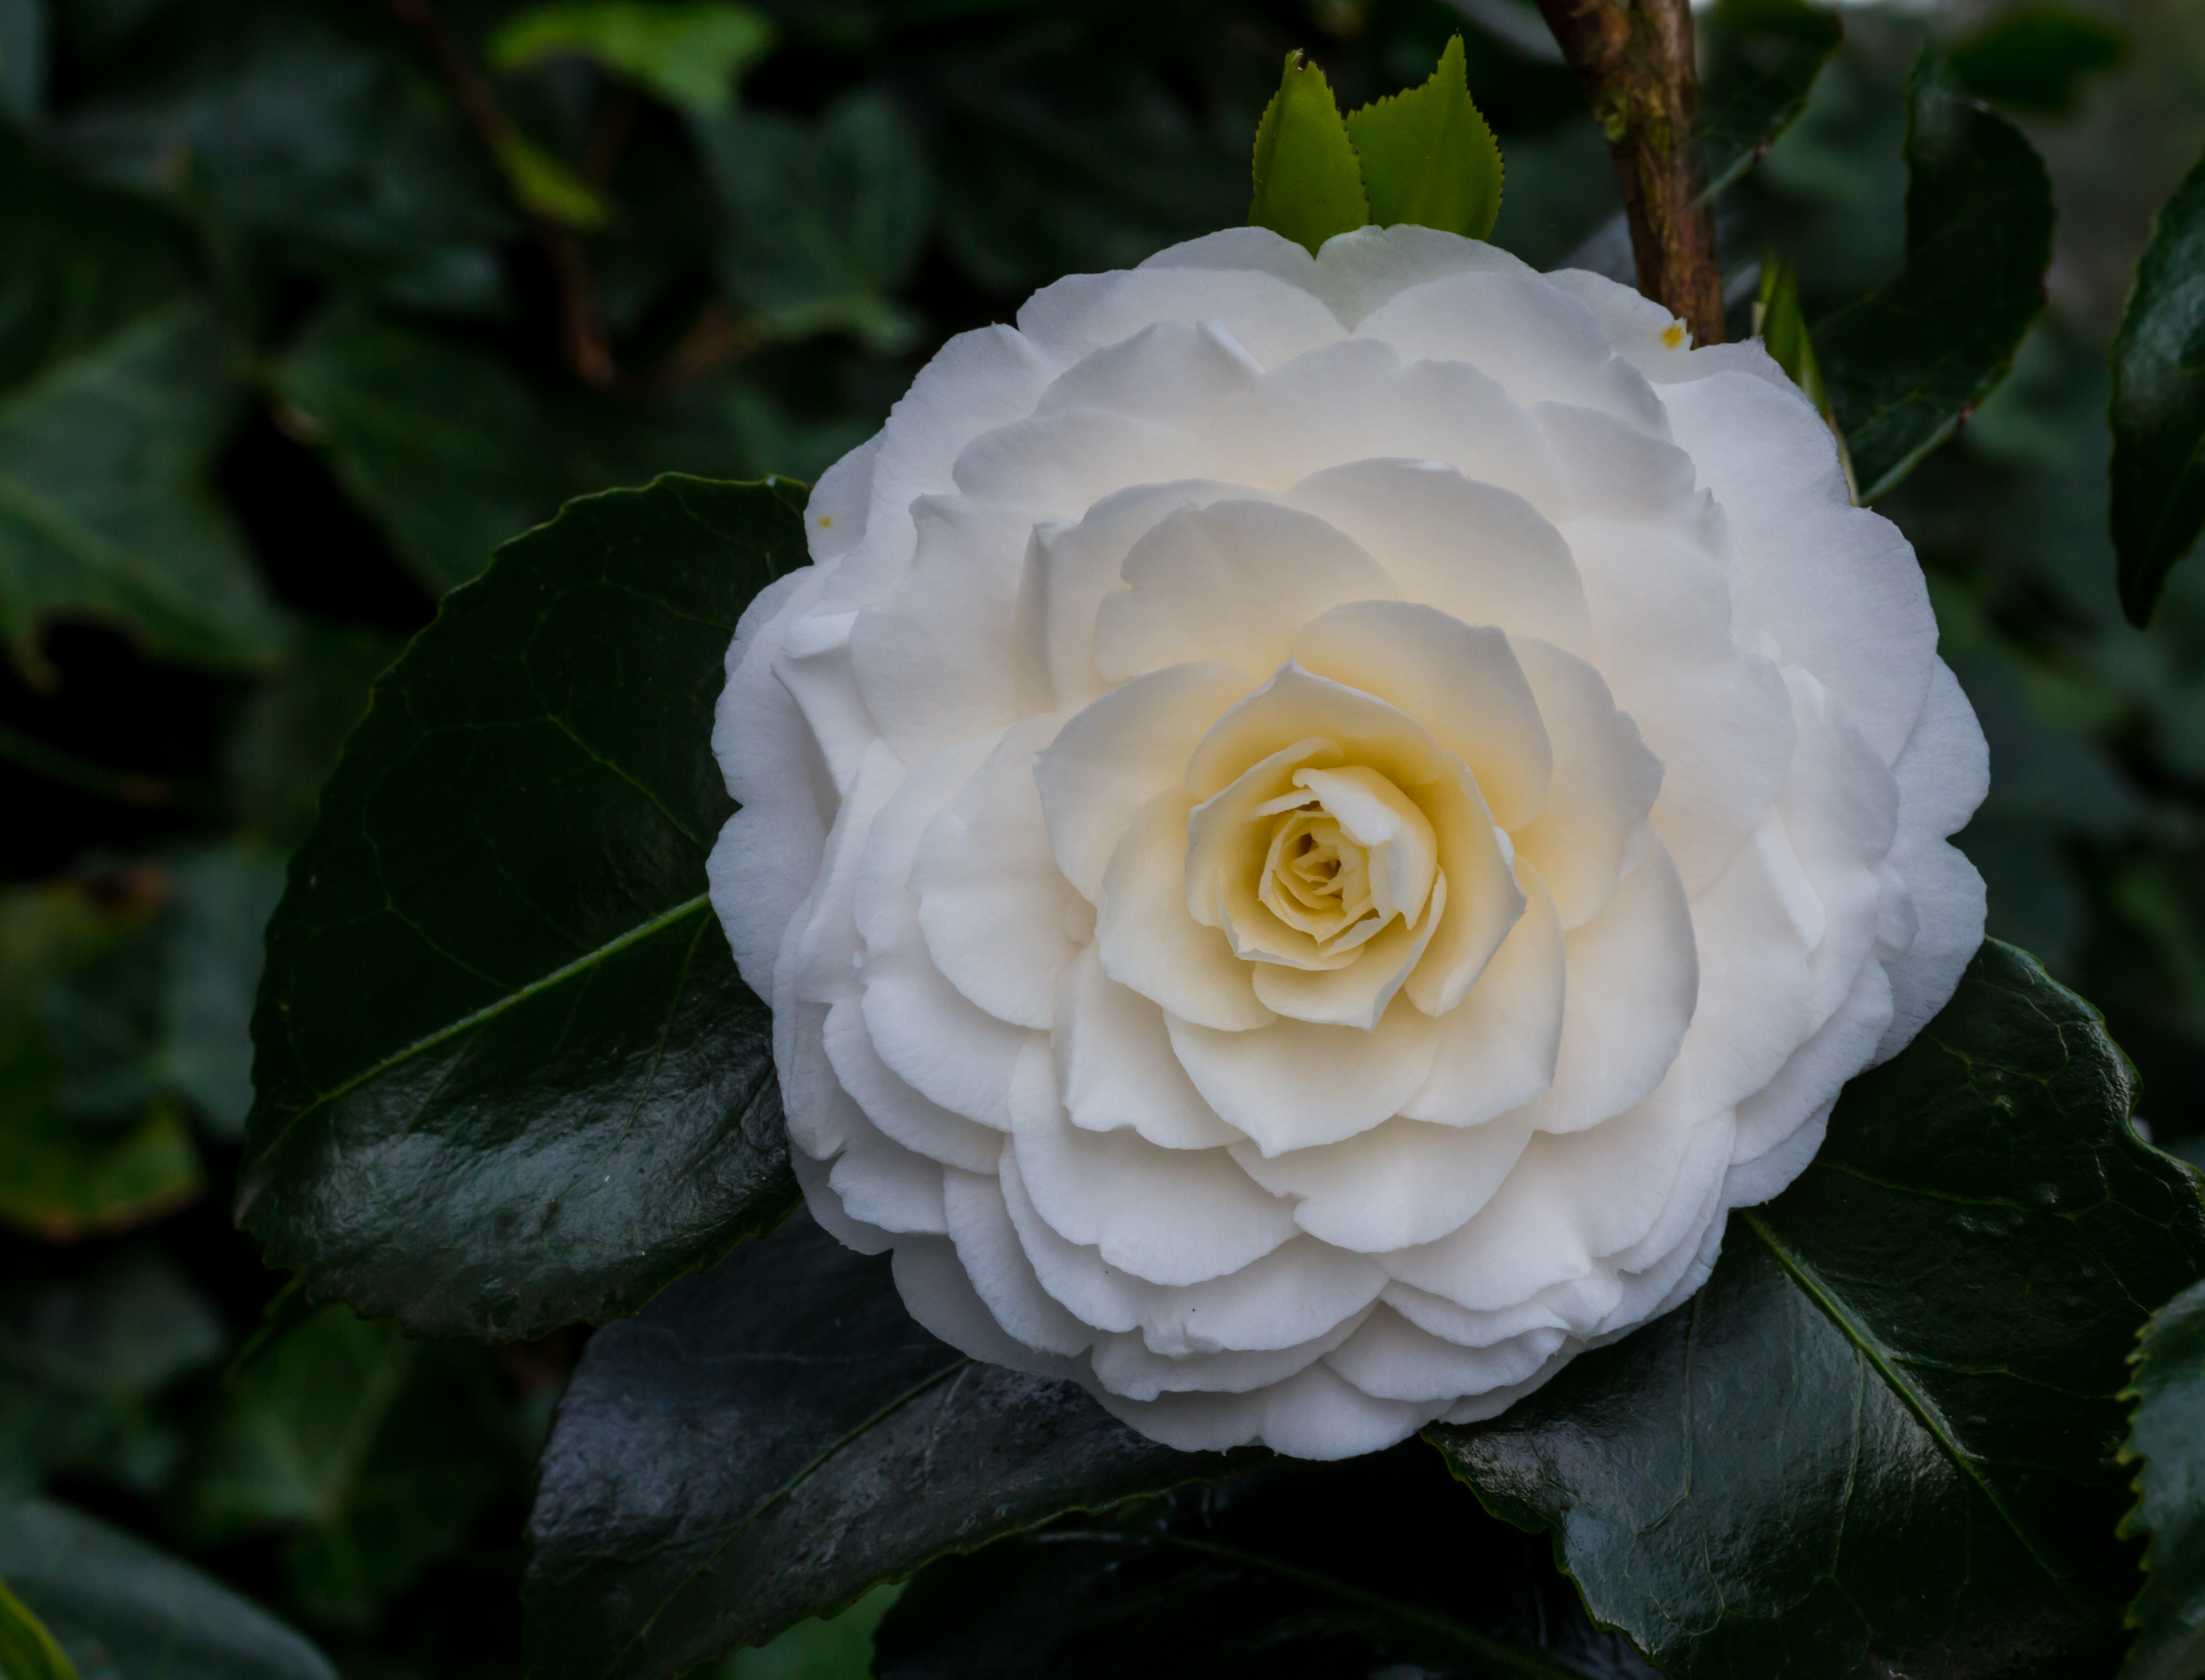 Tere schoonheid van de Camellia × williamsii 'Jury's Yellow' bloem. Locatie, Tuinreservaat Jonker vallei 02